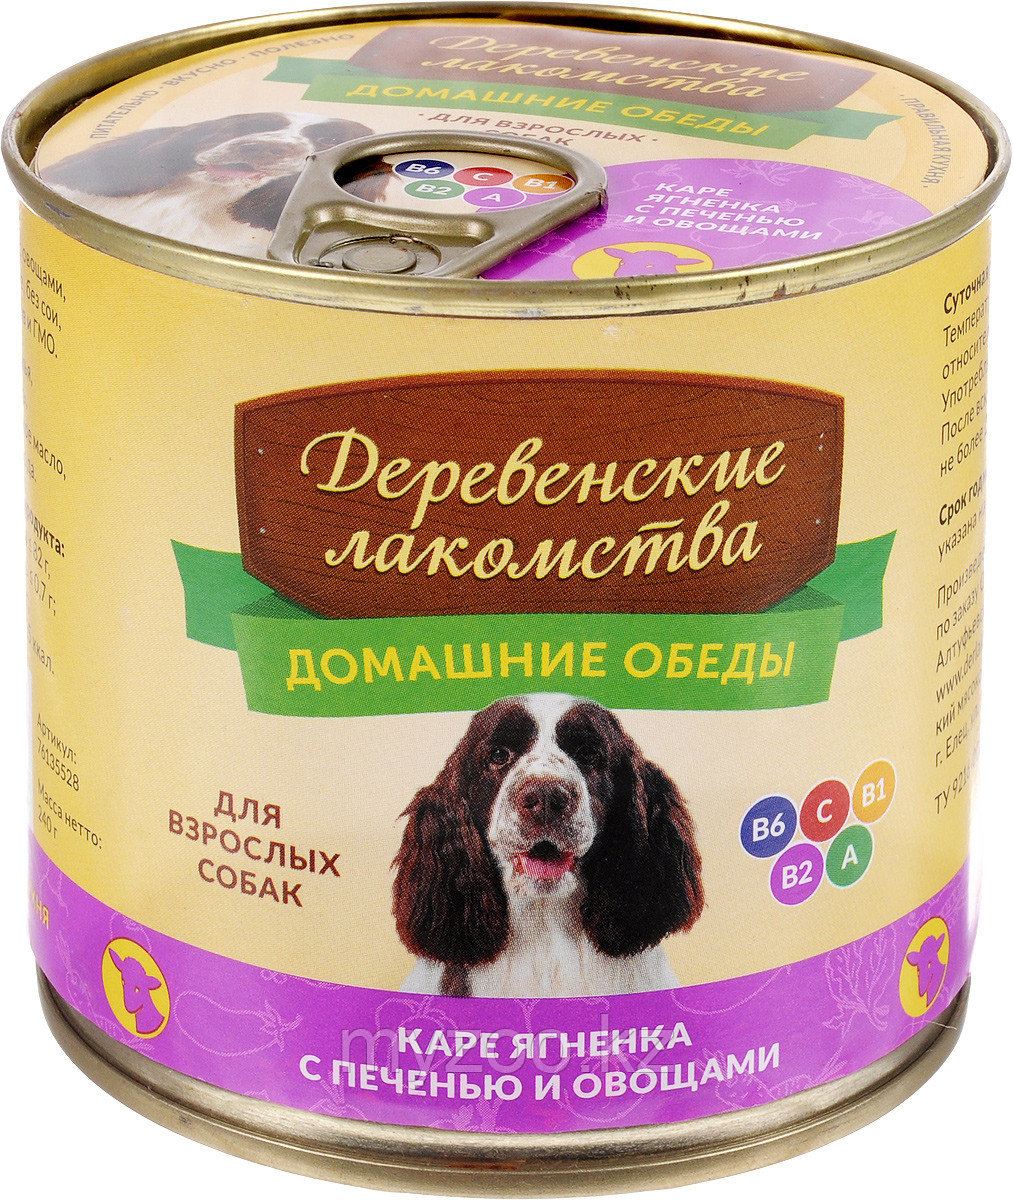 Деревенские лакомства консервы для собак  ягненок печень овощи100 гр